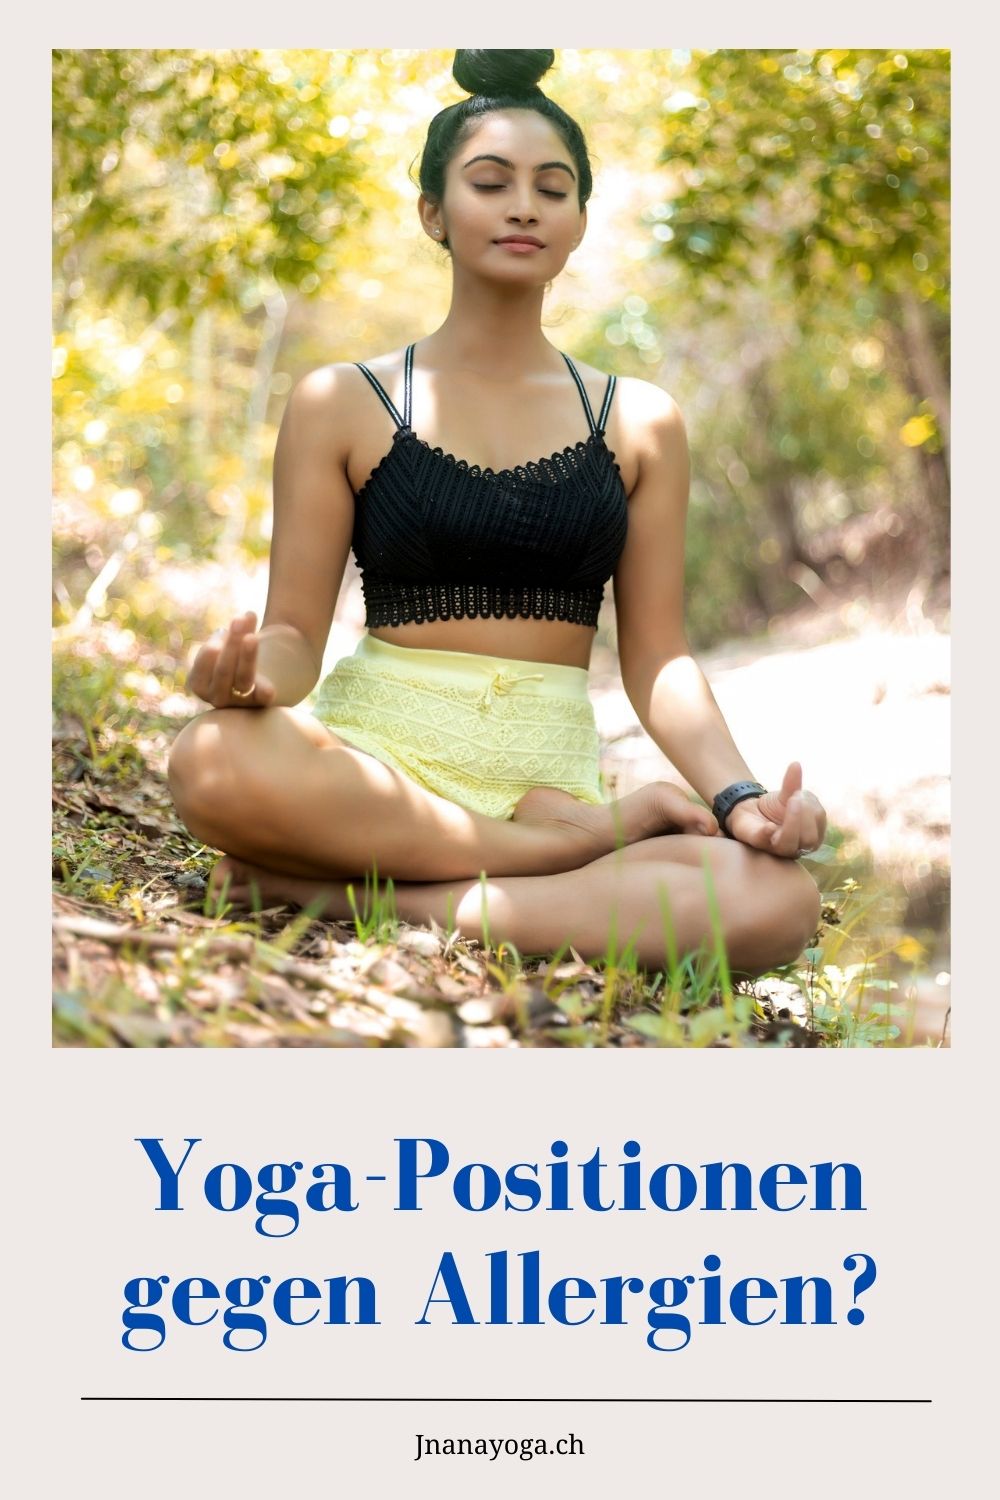 Yoga-Positionen gegen Allergien?